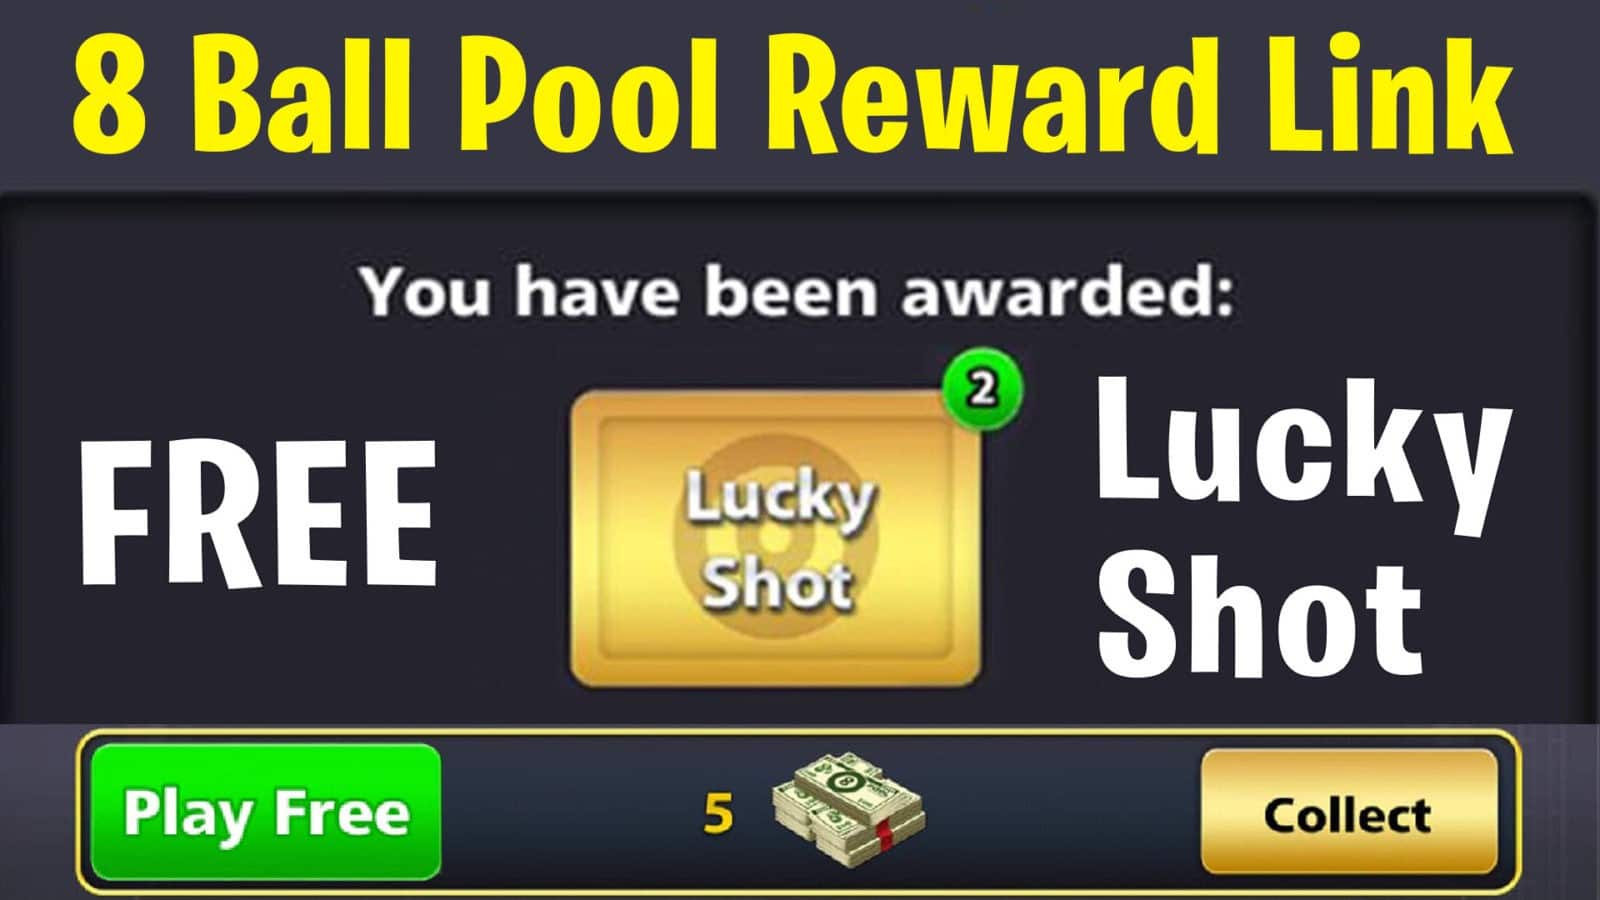 8 Ball Pool Free Lucky Golden Shot Reward Link Updated